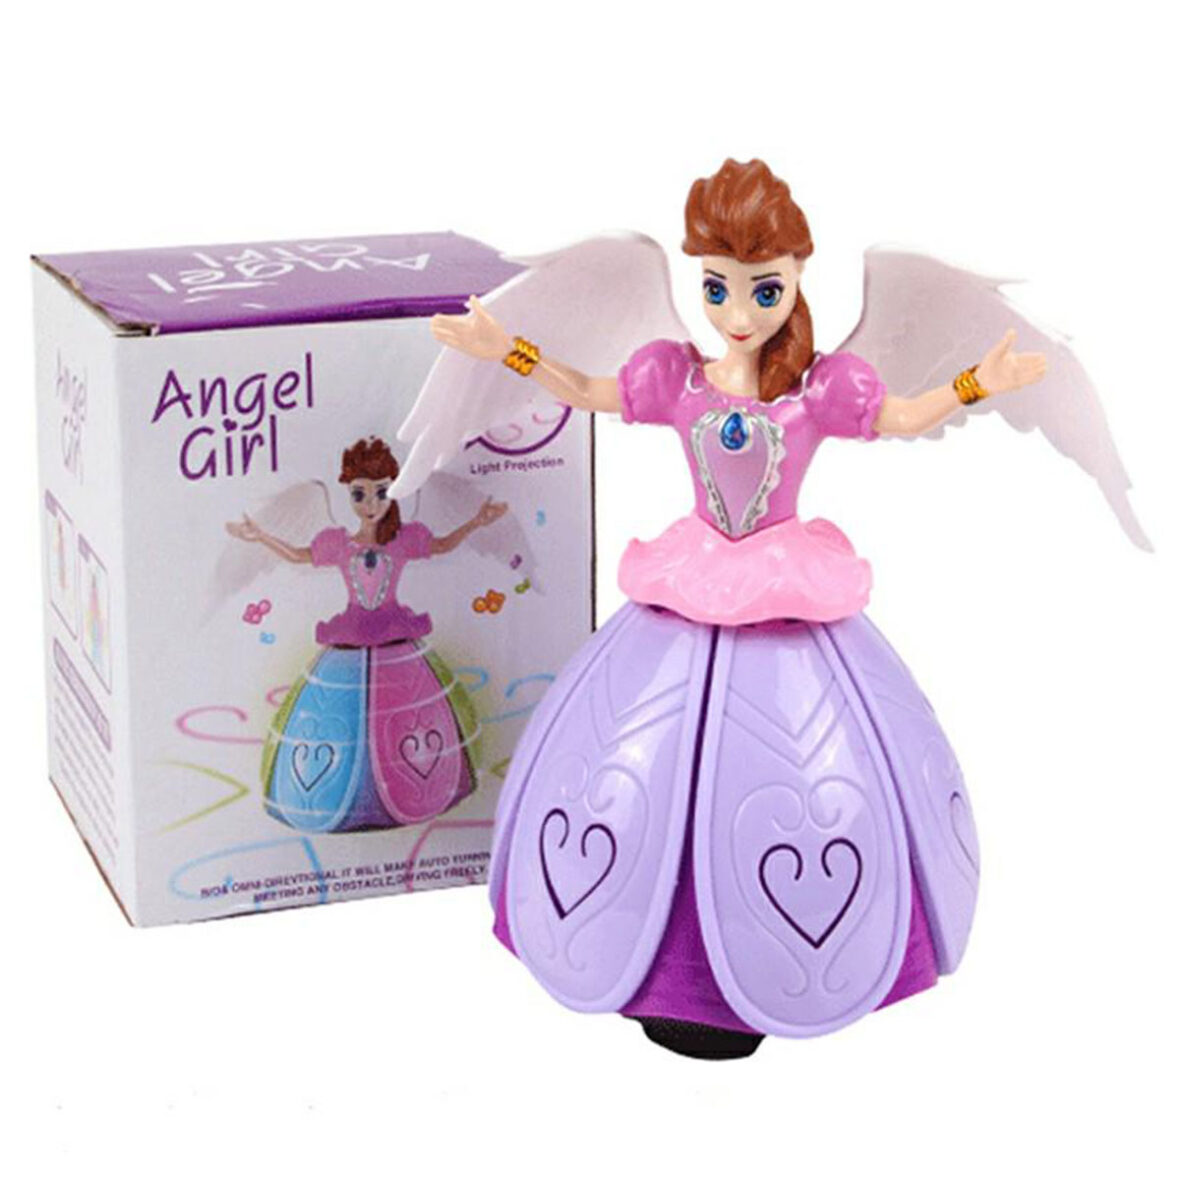 Angle Girl Toy